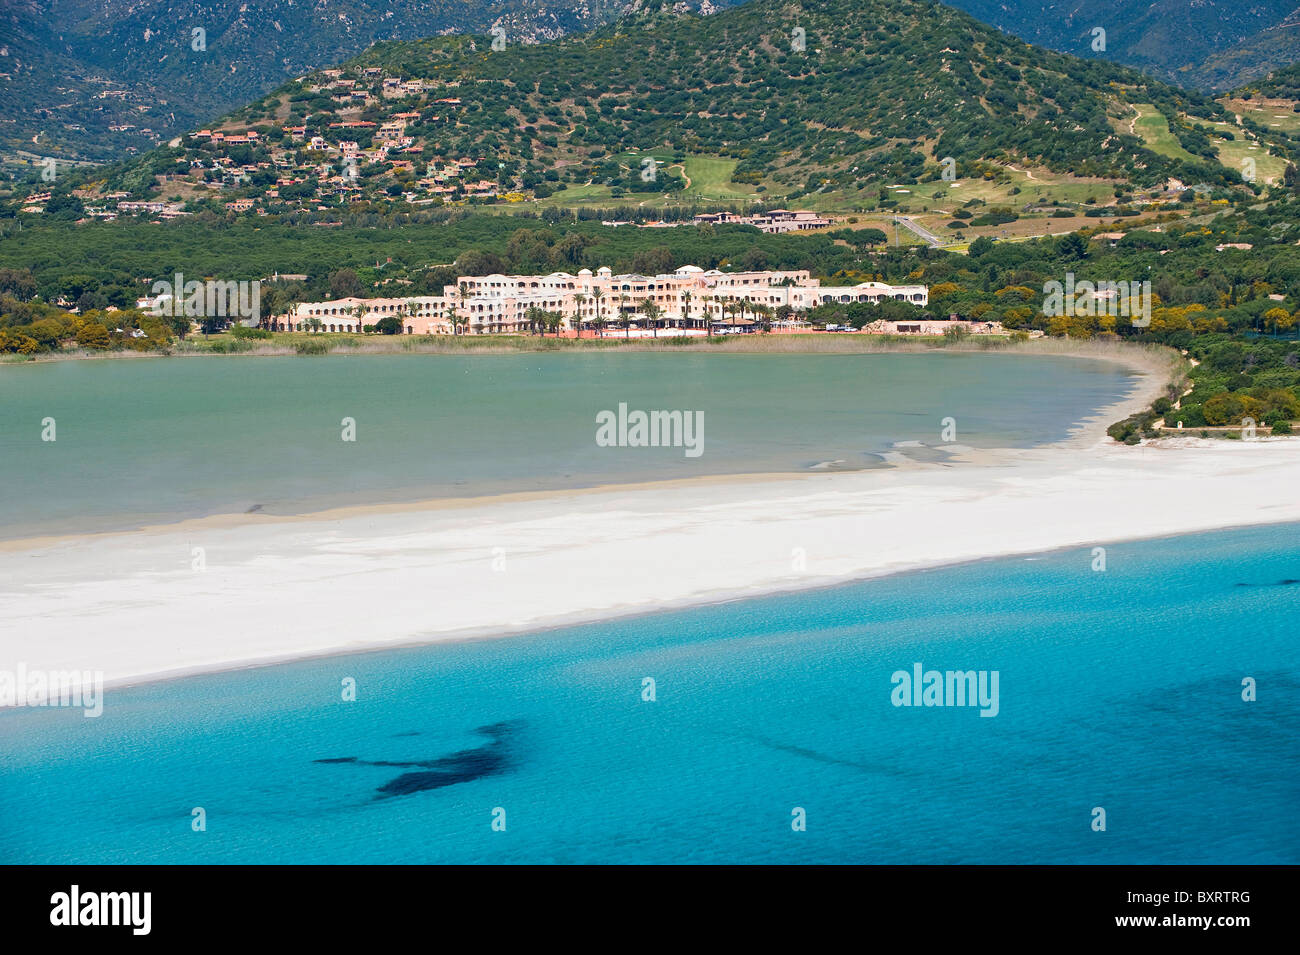 Cala Giunco, Notteri, Timi Ama resort, Villasimius, Provincia di Cagliari, Sardinia, Italy Stock Photo